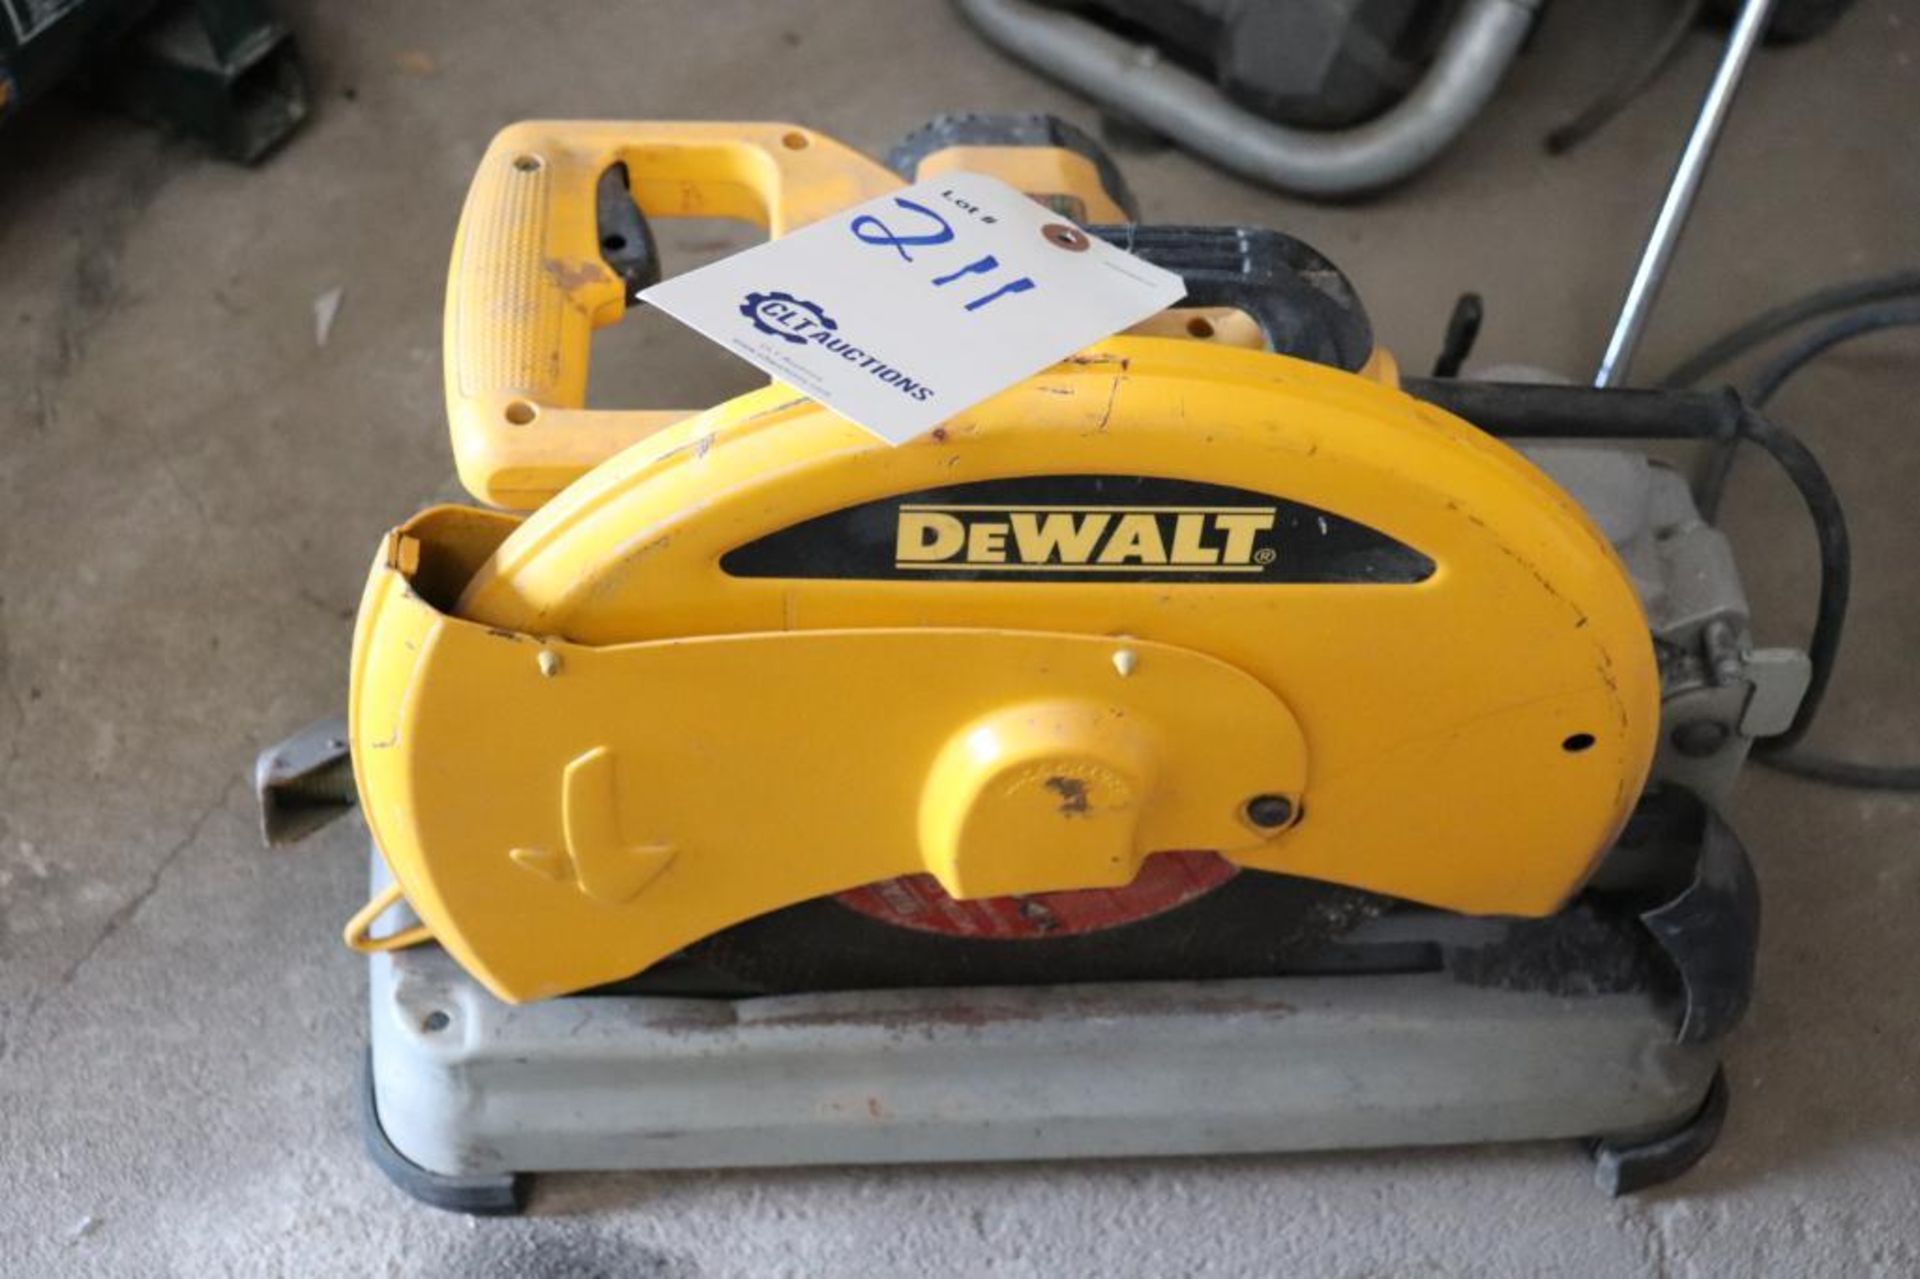 DeWalt D28715 14" chop saw